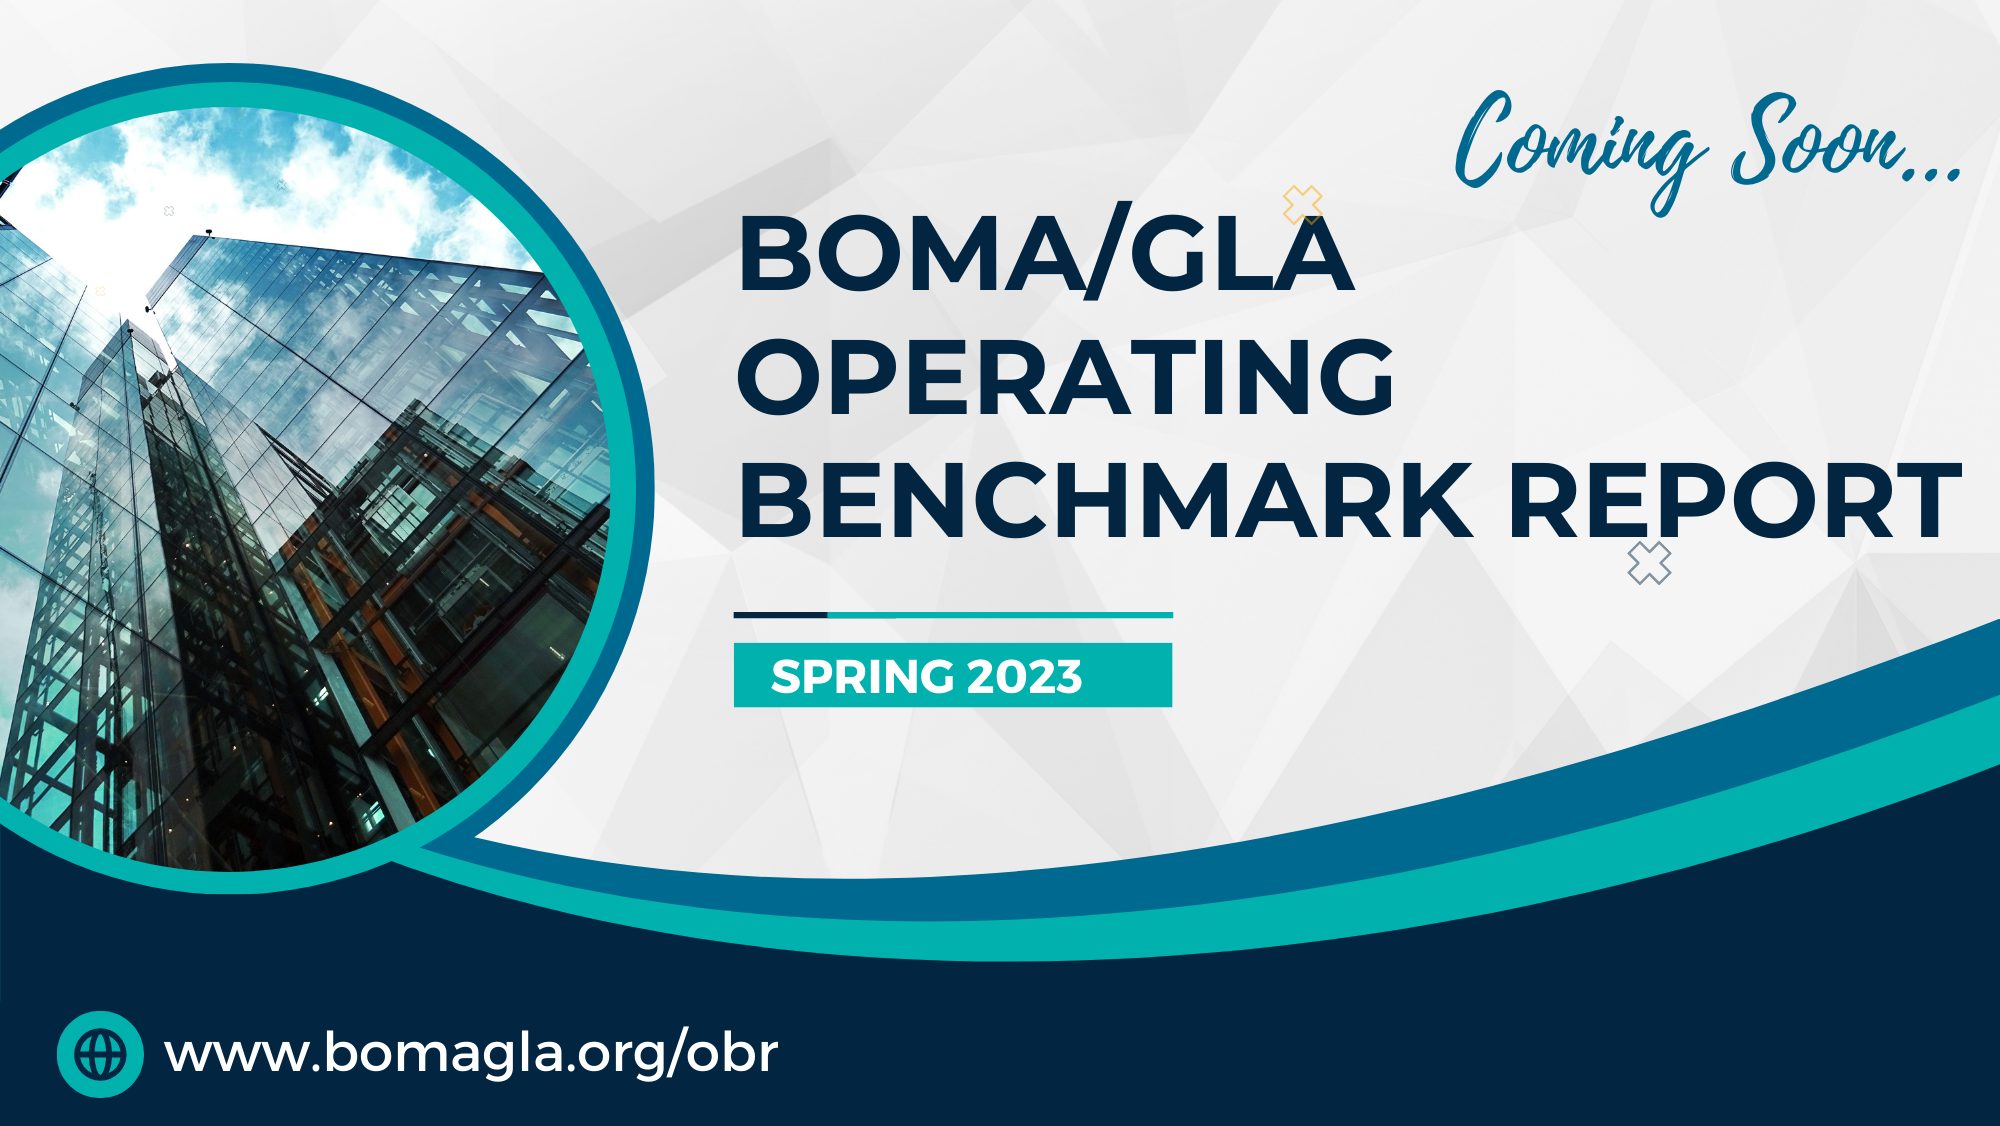 BOMAGLA OPERATINg benchmark Report (10 × 5.63 in)